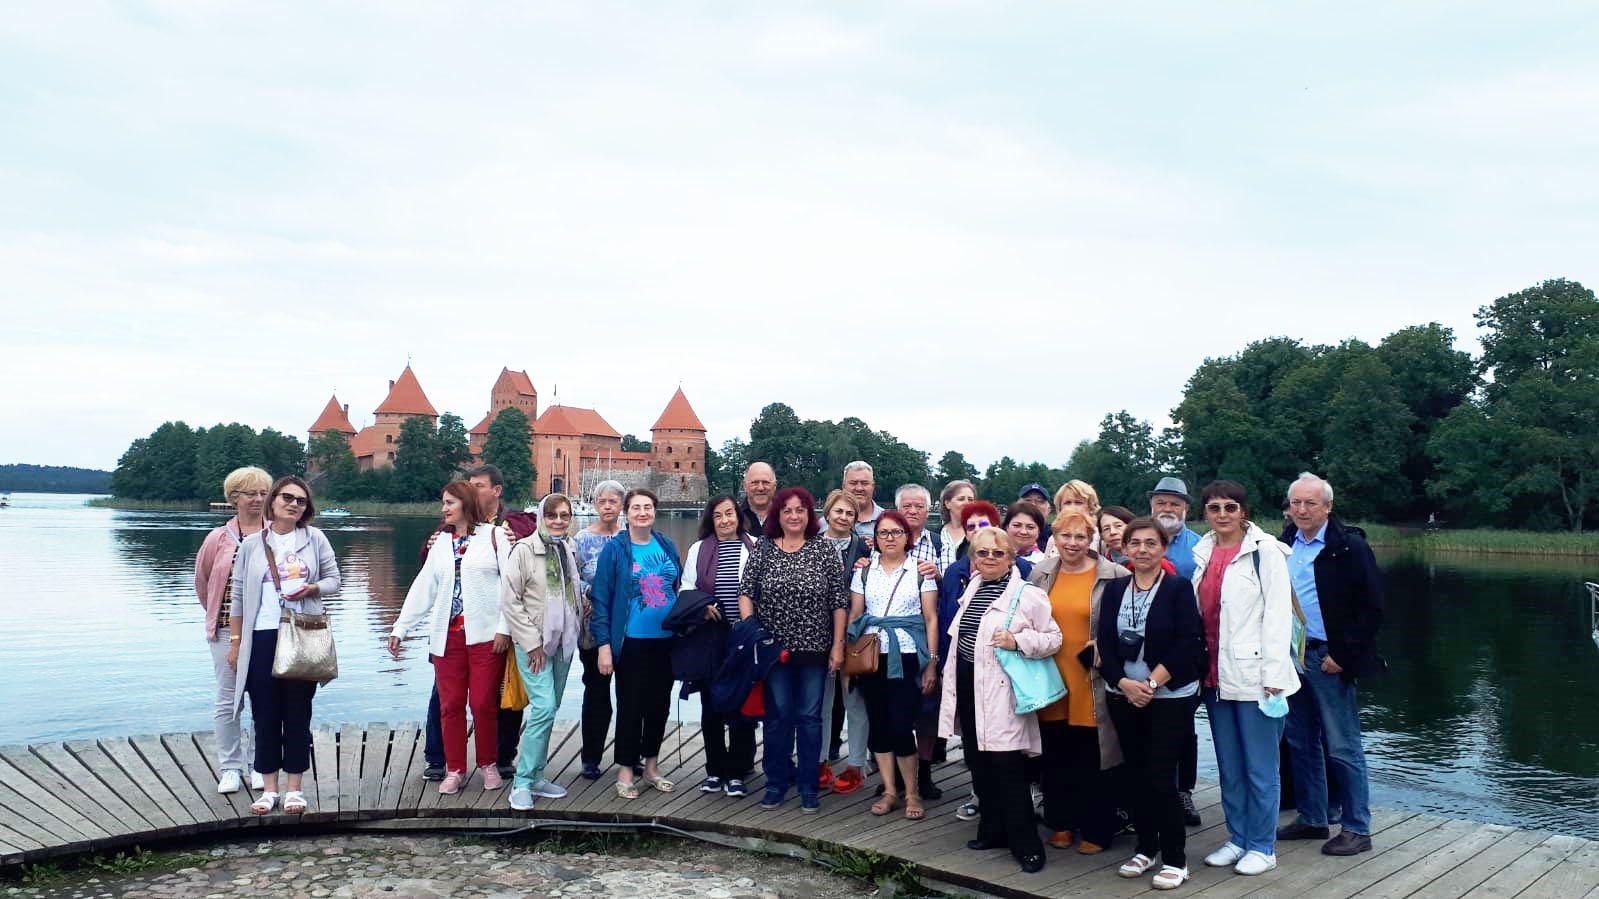 In Lituania la Castelul Trakai